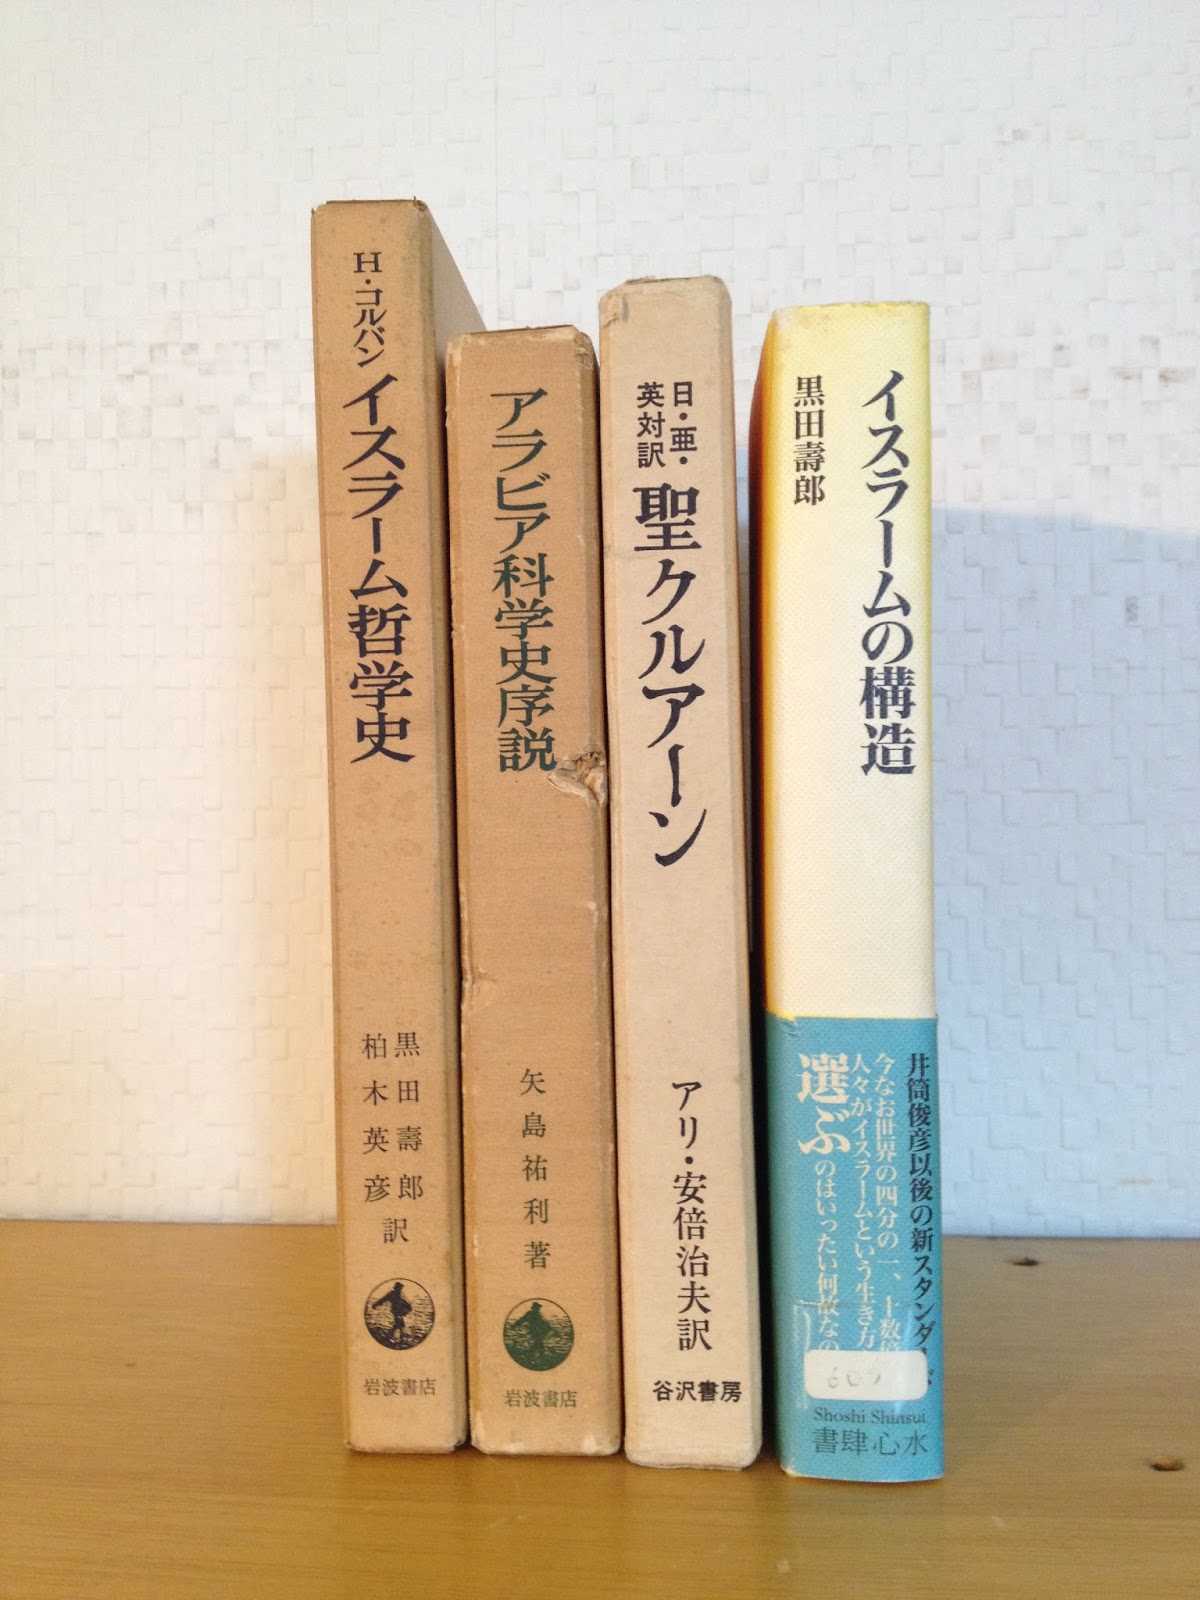 mikazuki books online  　　　　　　三日月書店